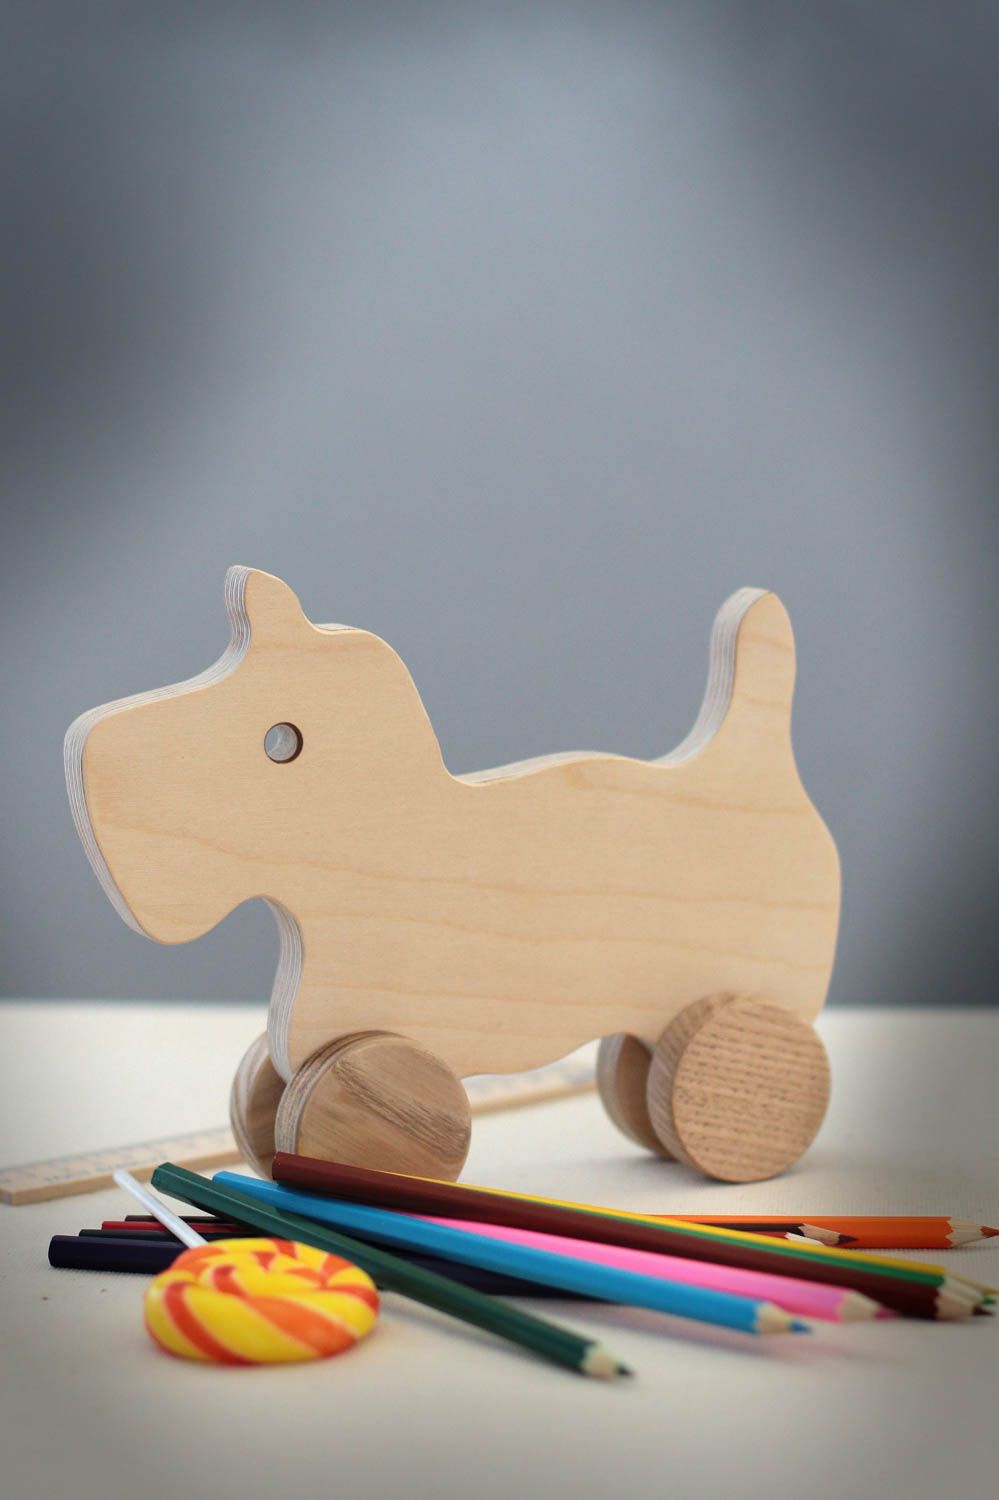 Игрушка ручной работы игрушка из дерева ясеня игрушка каталка Животное фото 1